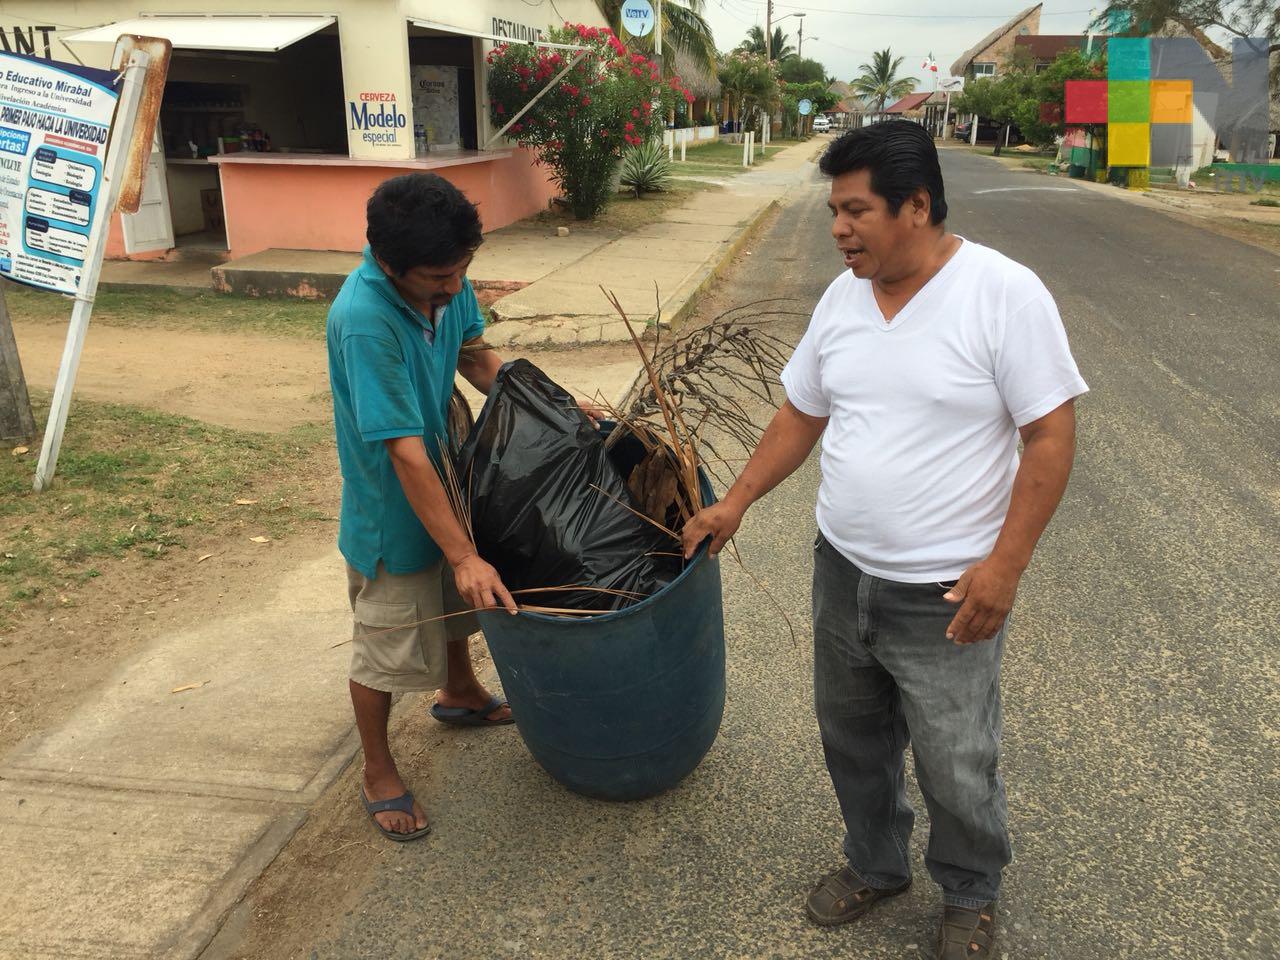 Limpia Pública pide 50 pesos por recoger basura en Coatzacoalcos: restauranteros y habitantes